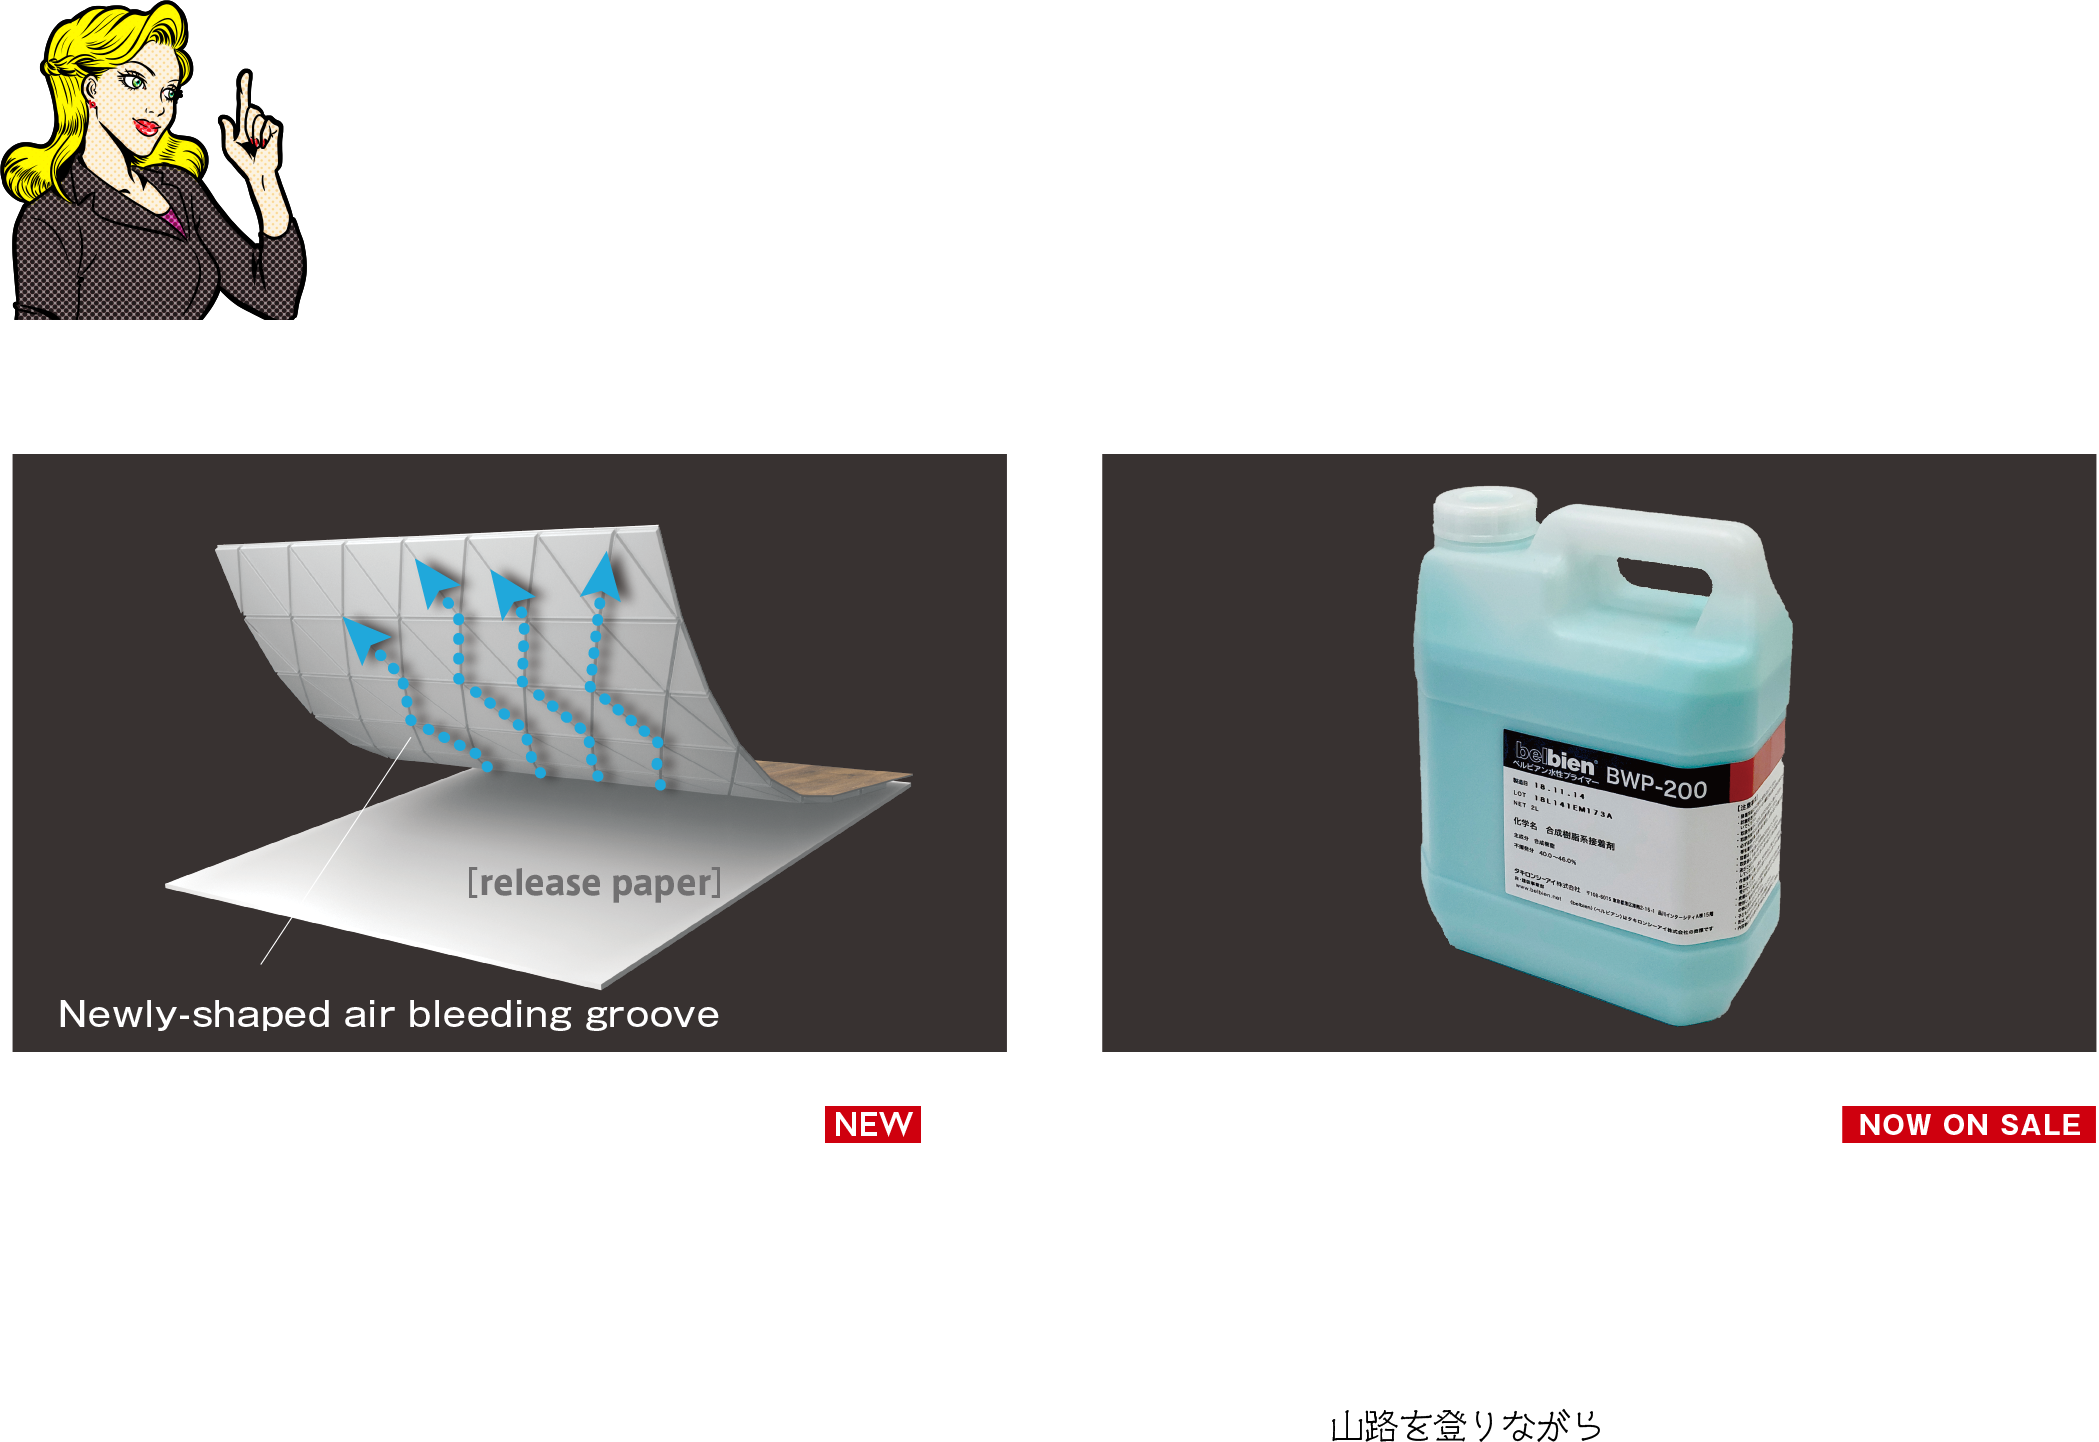 Even easier to apply! belbien, enhanced efficiency!